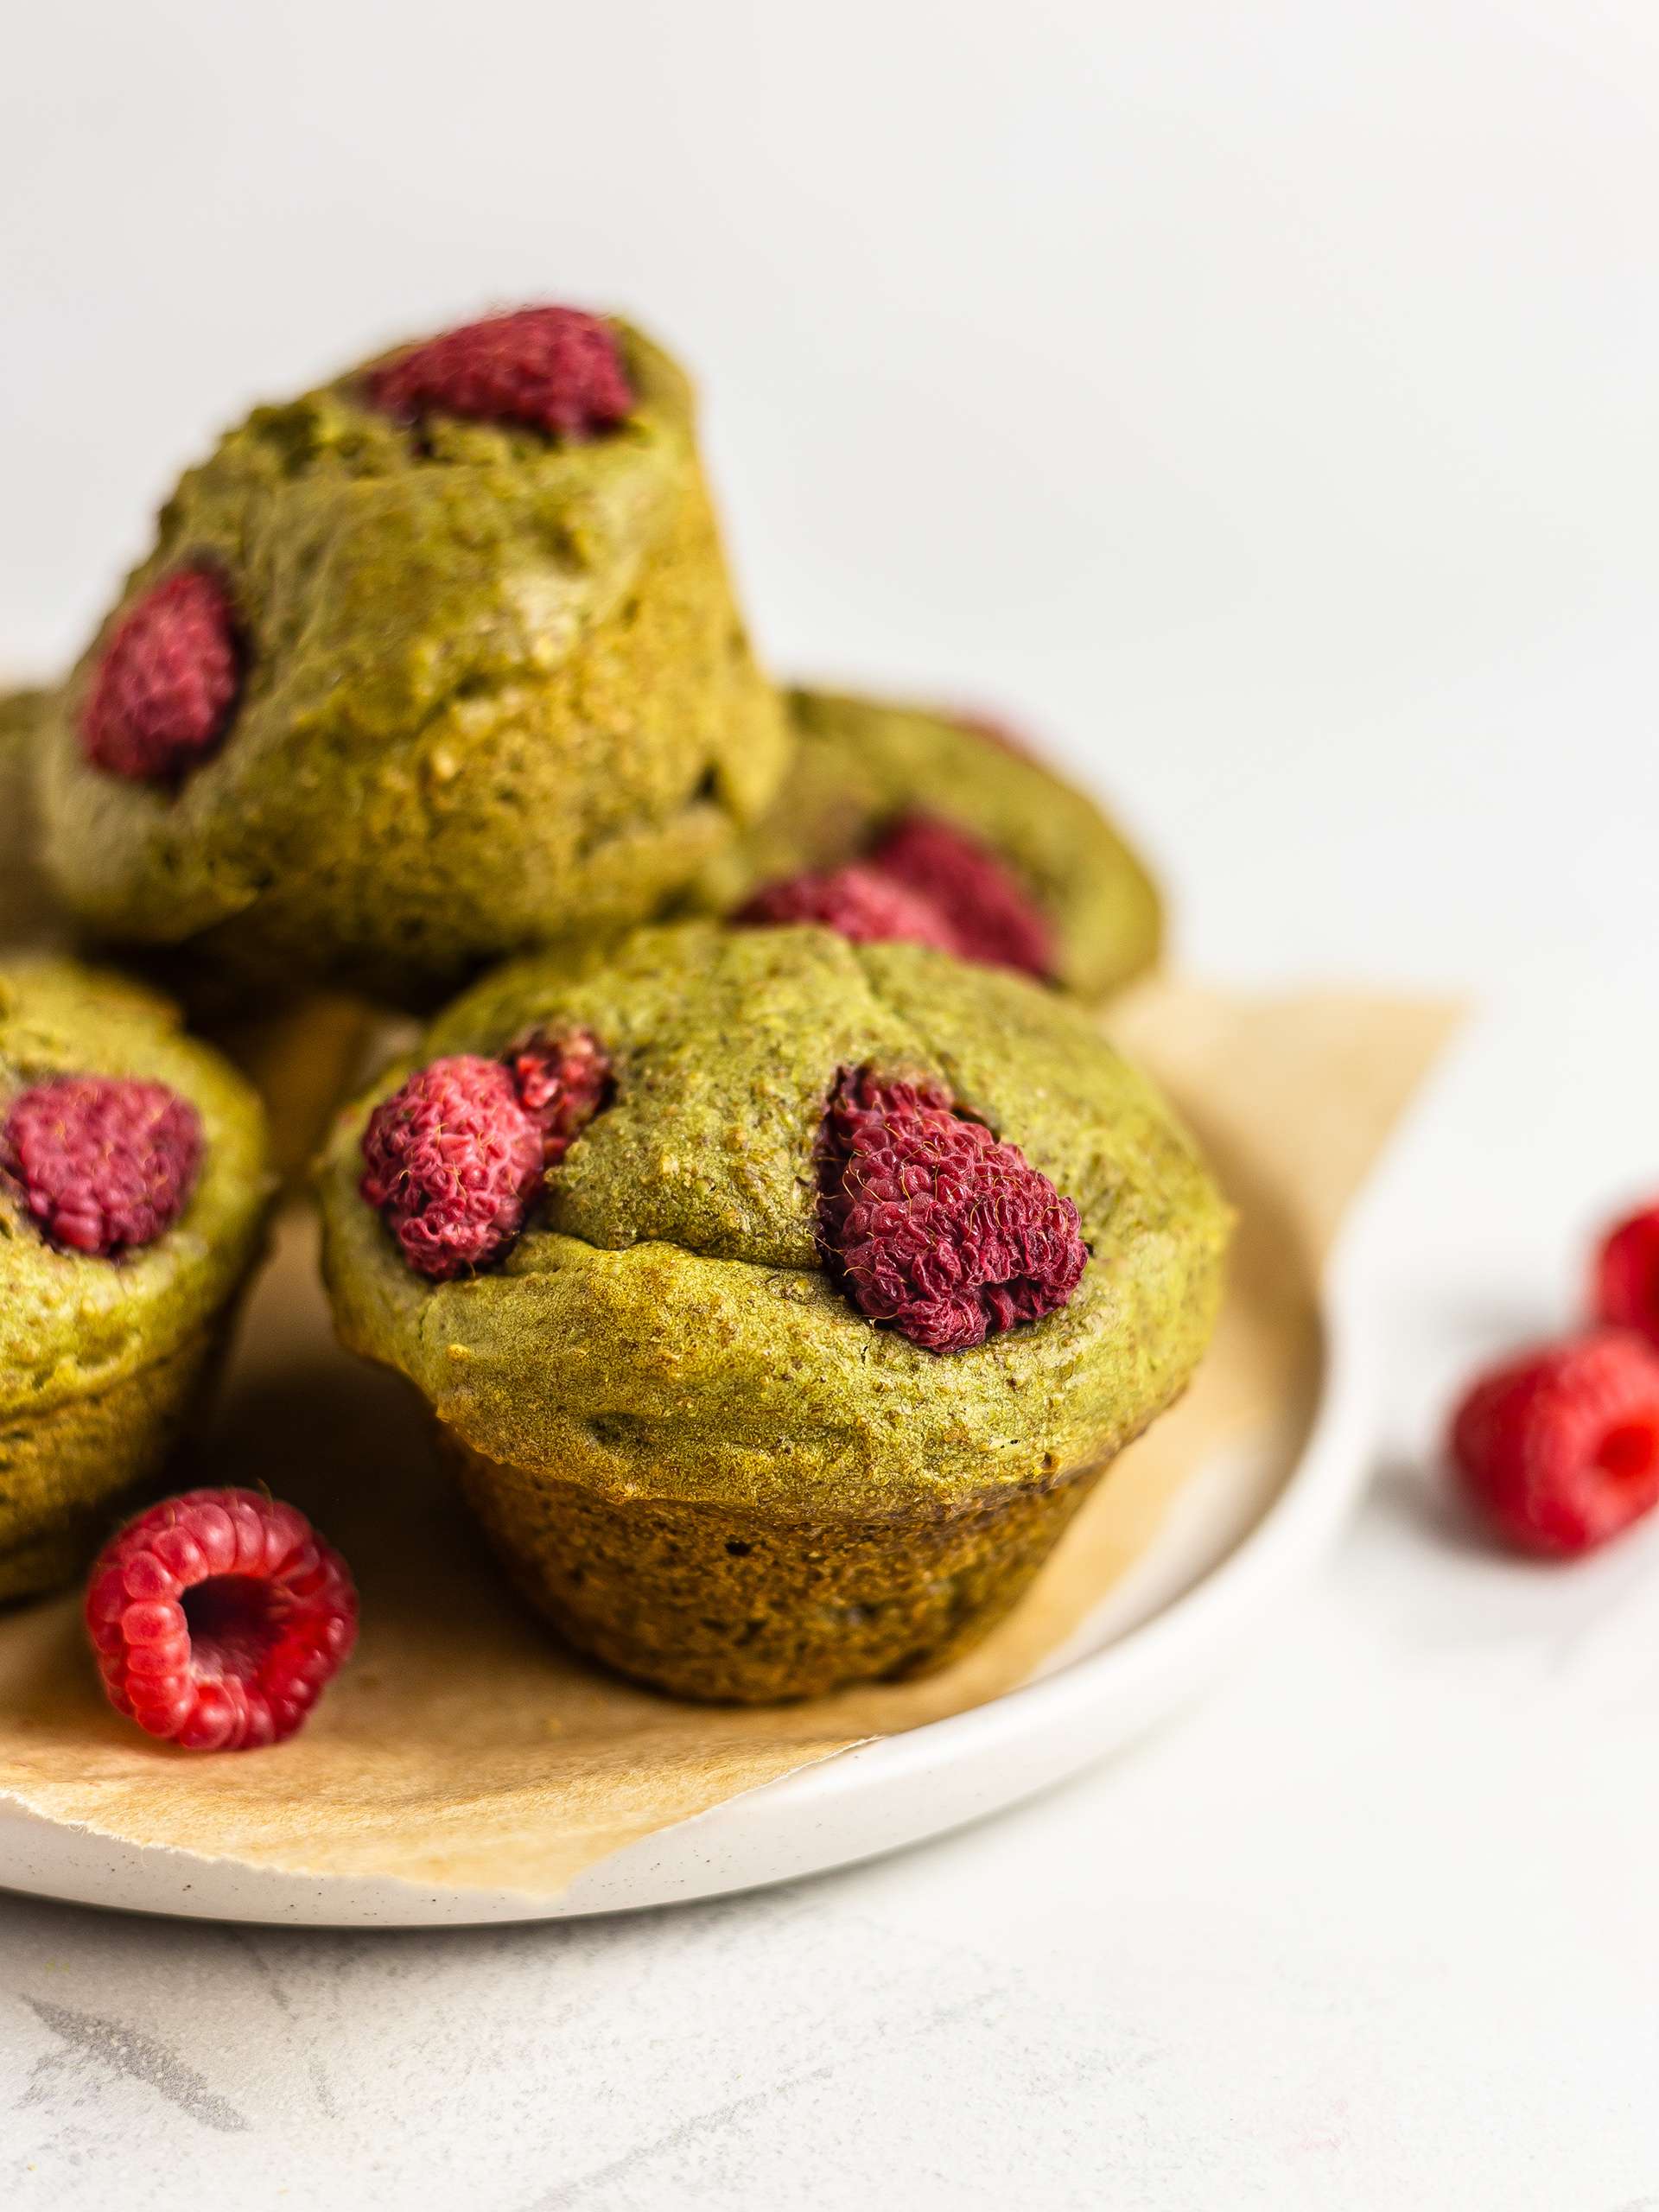 Vegan Matcha Muffins with Raspberries